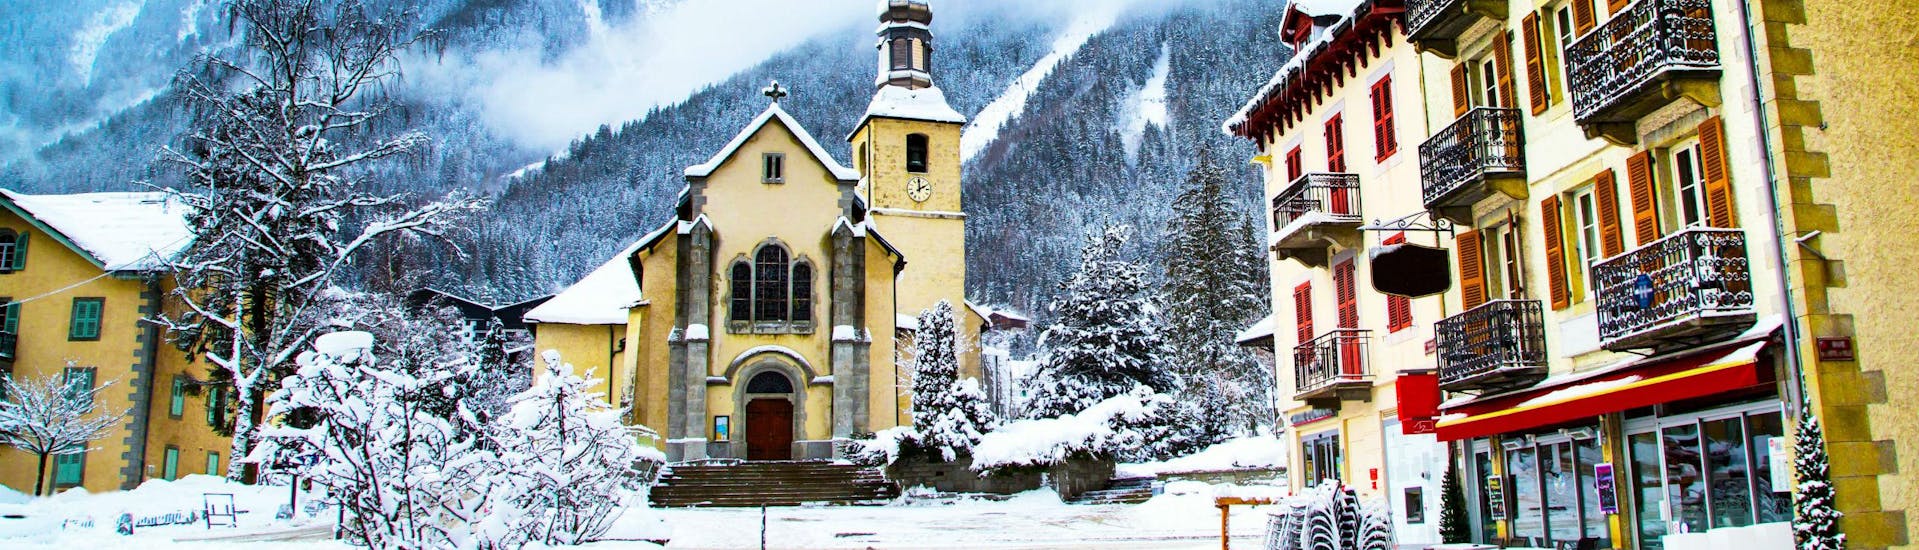 Le centre-ville de Chamonix, où les écoles de ski locales ont leur bureau où les futurs skieurs se retrouvent pour leurs cours de ski.